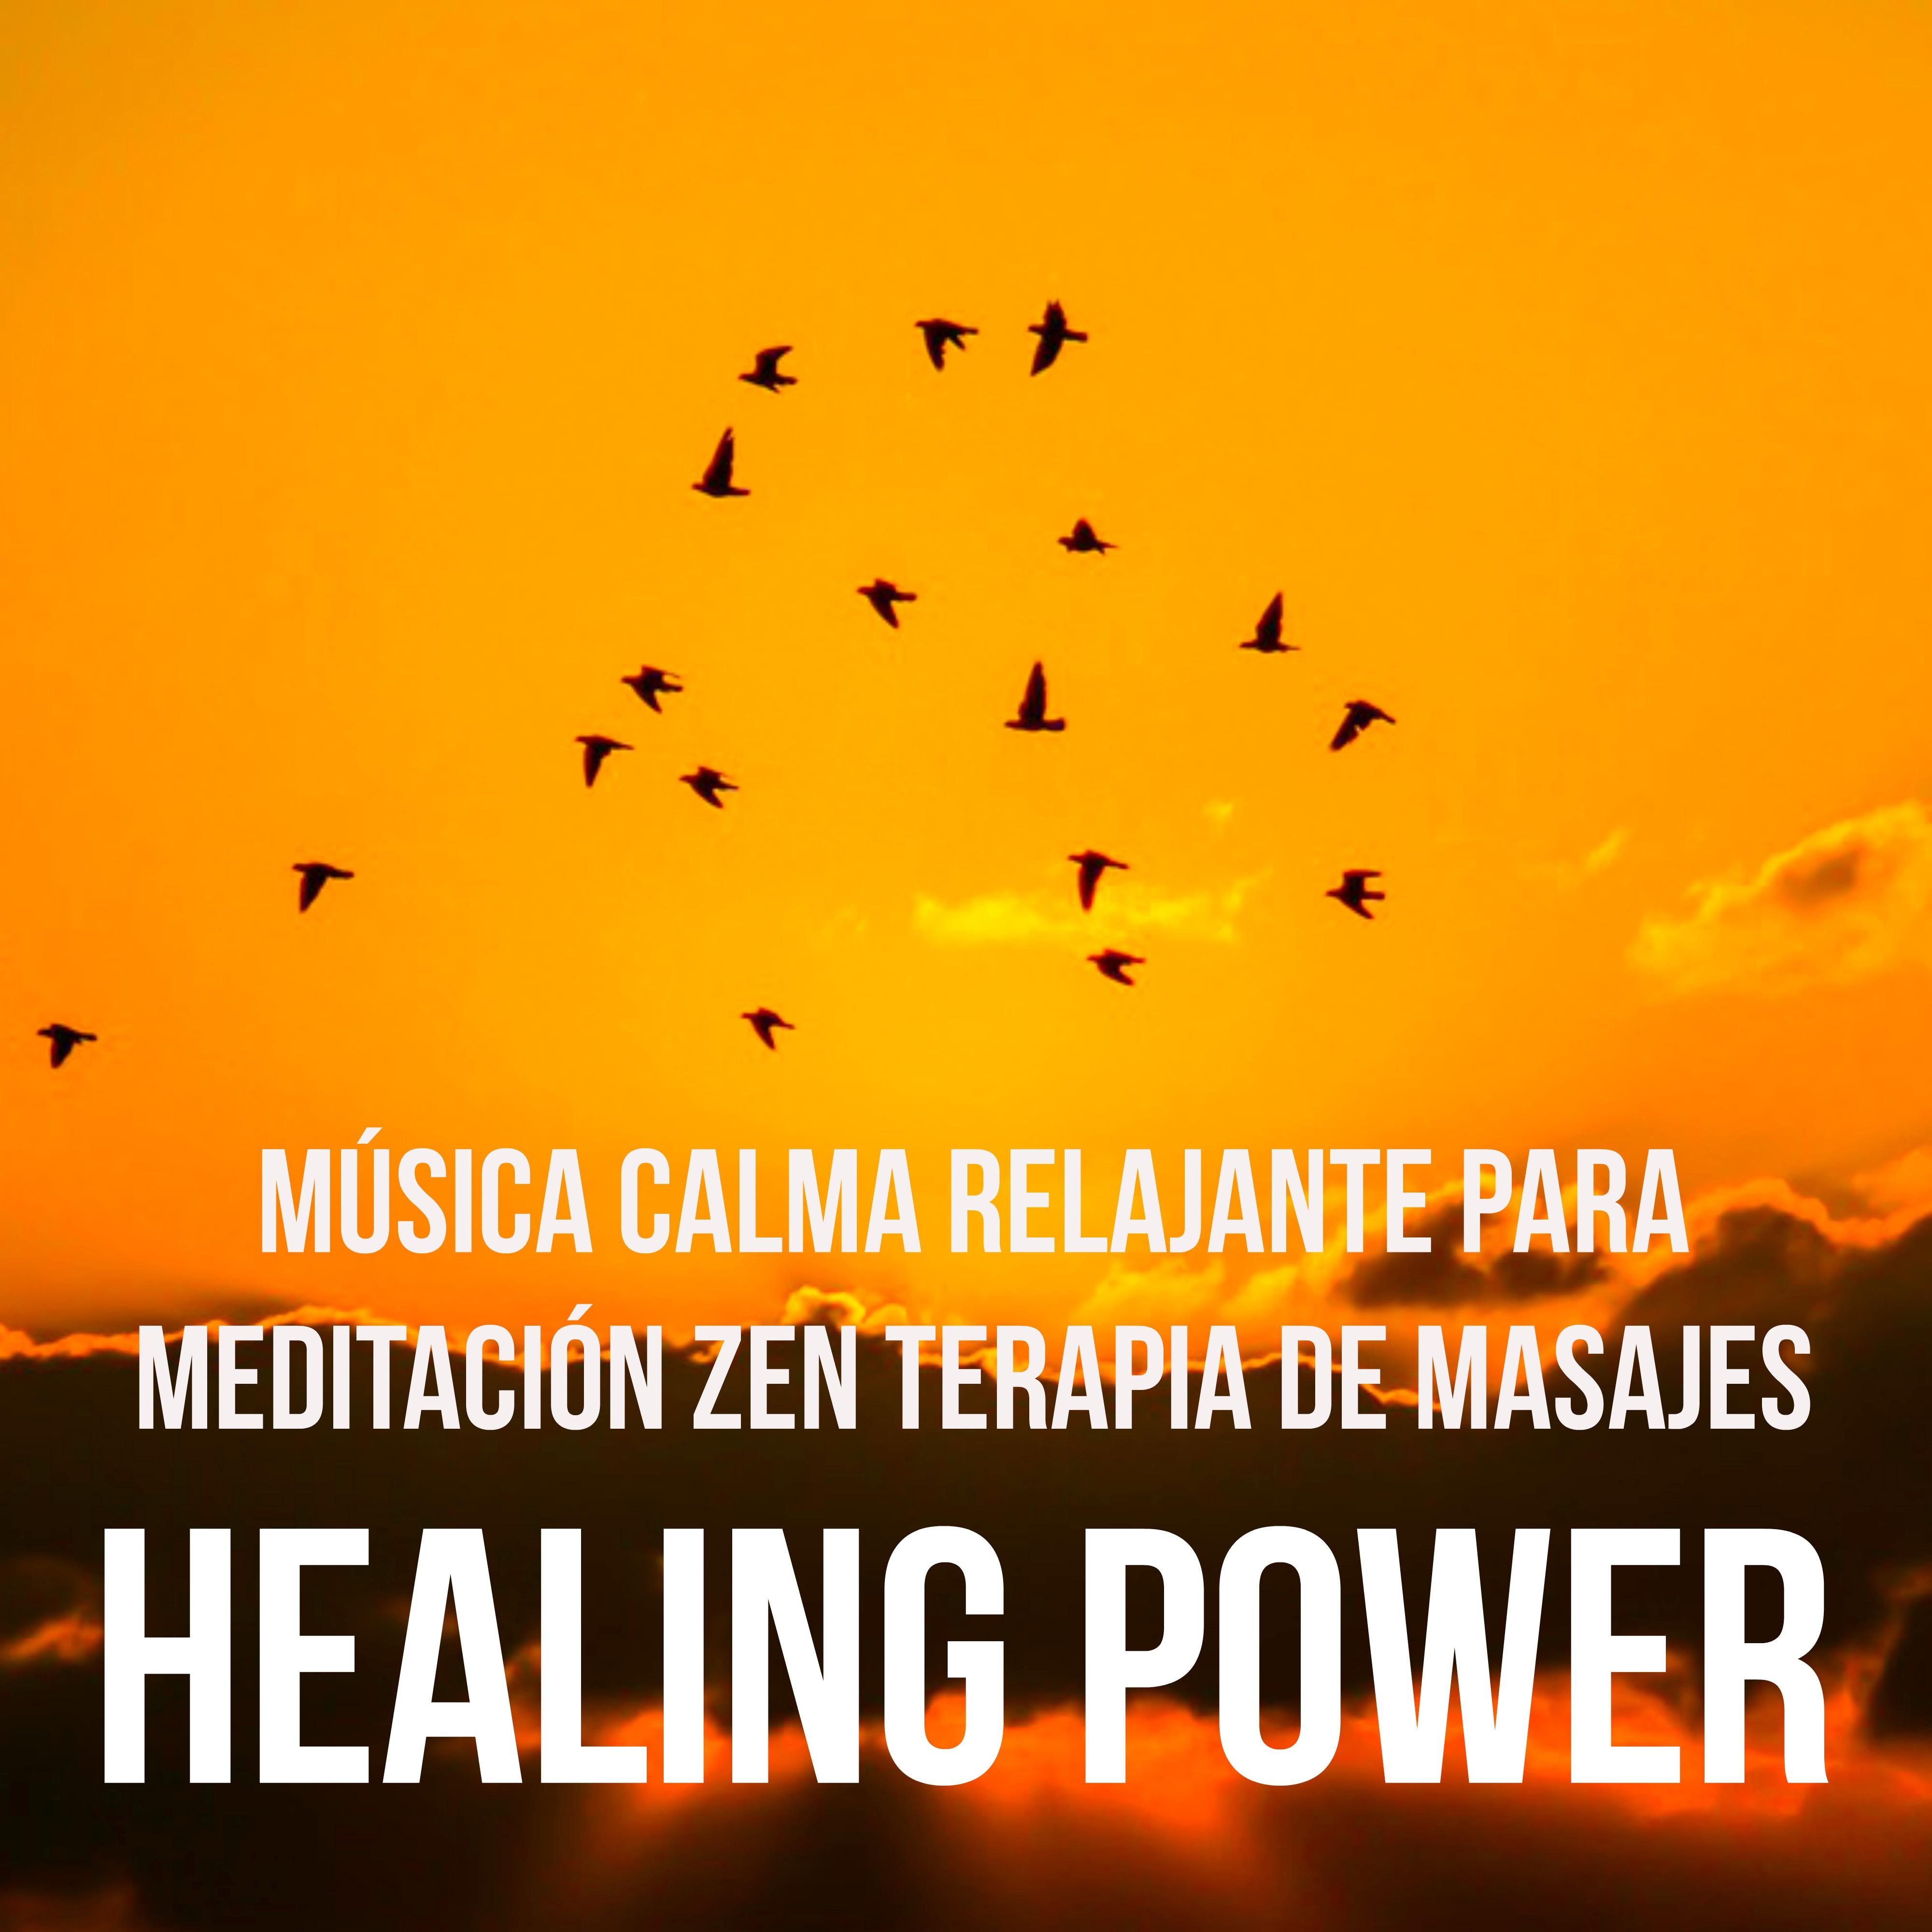 Healing Power - Música Calma Relajante para Meditación Zen Terapia de Masajes Poder de la Mente con Sonidos Naturales Instrumentales y New Age